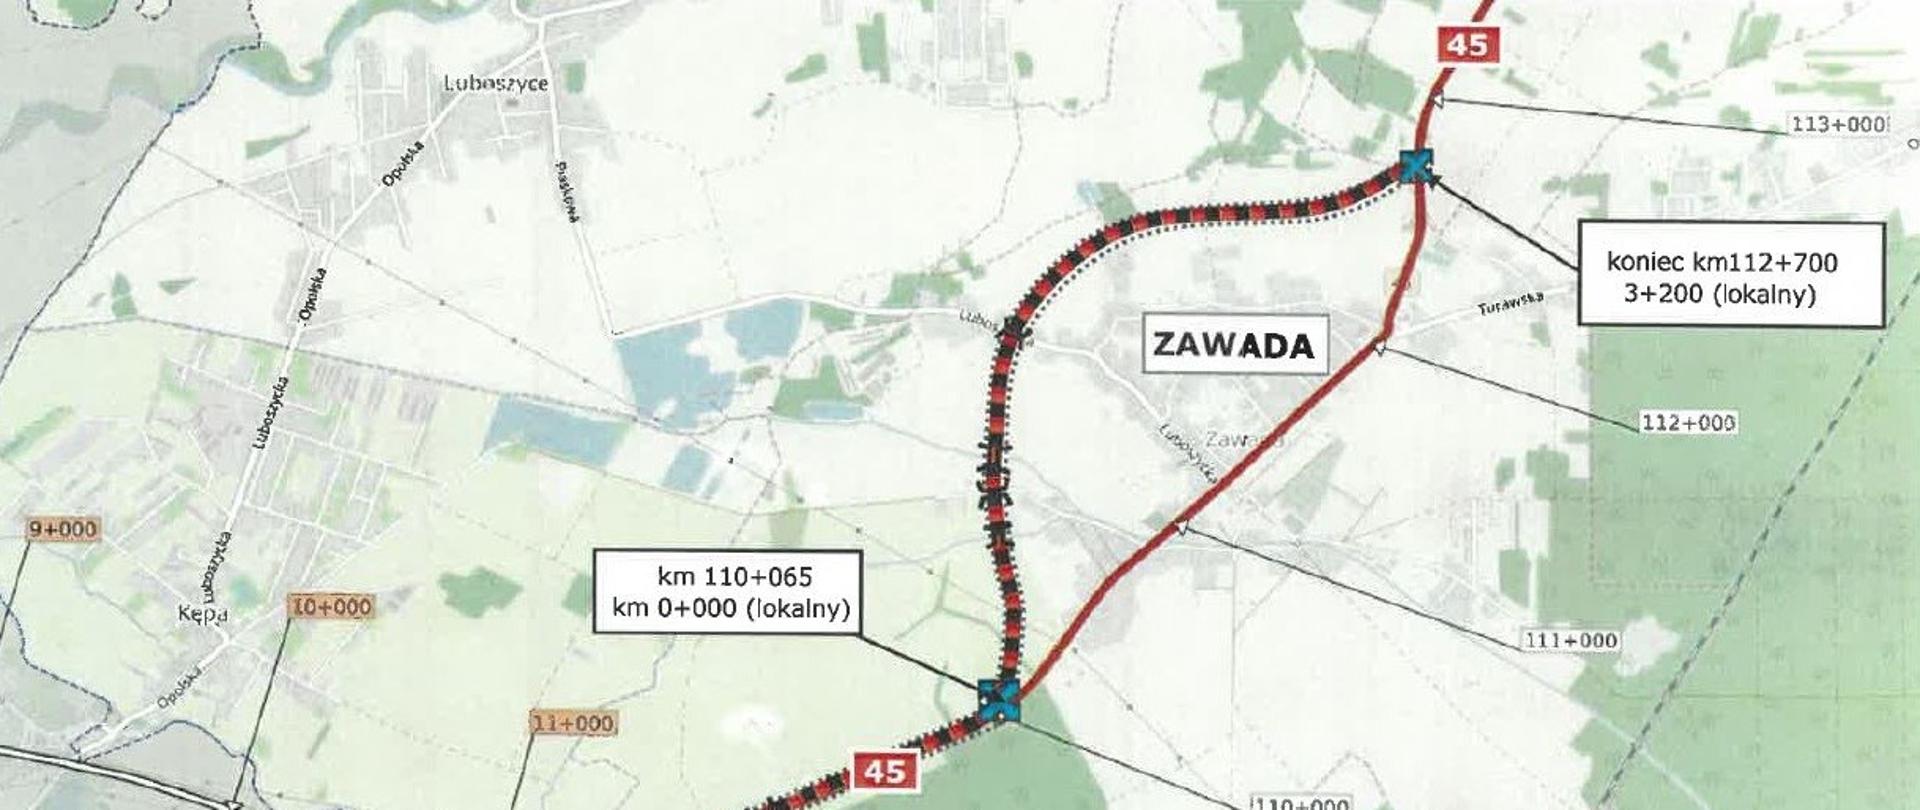 DK45 Opole – Zawada zostanie rozbudowana